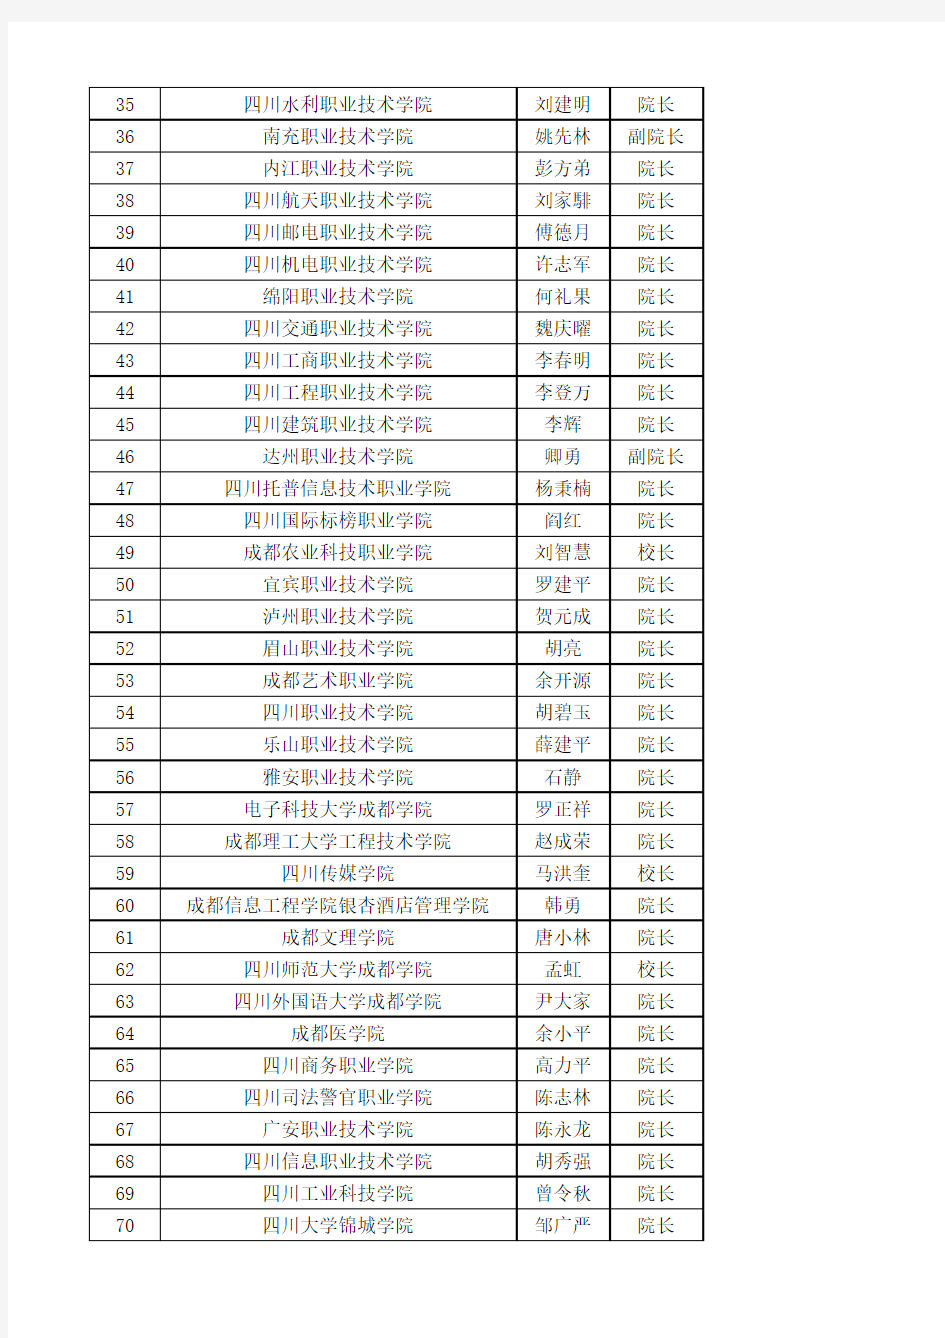 四川地方属高校2014年高考录取通知书签发人名单